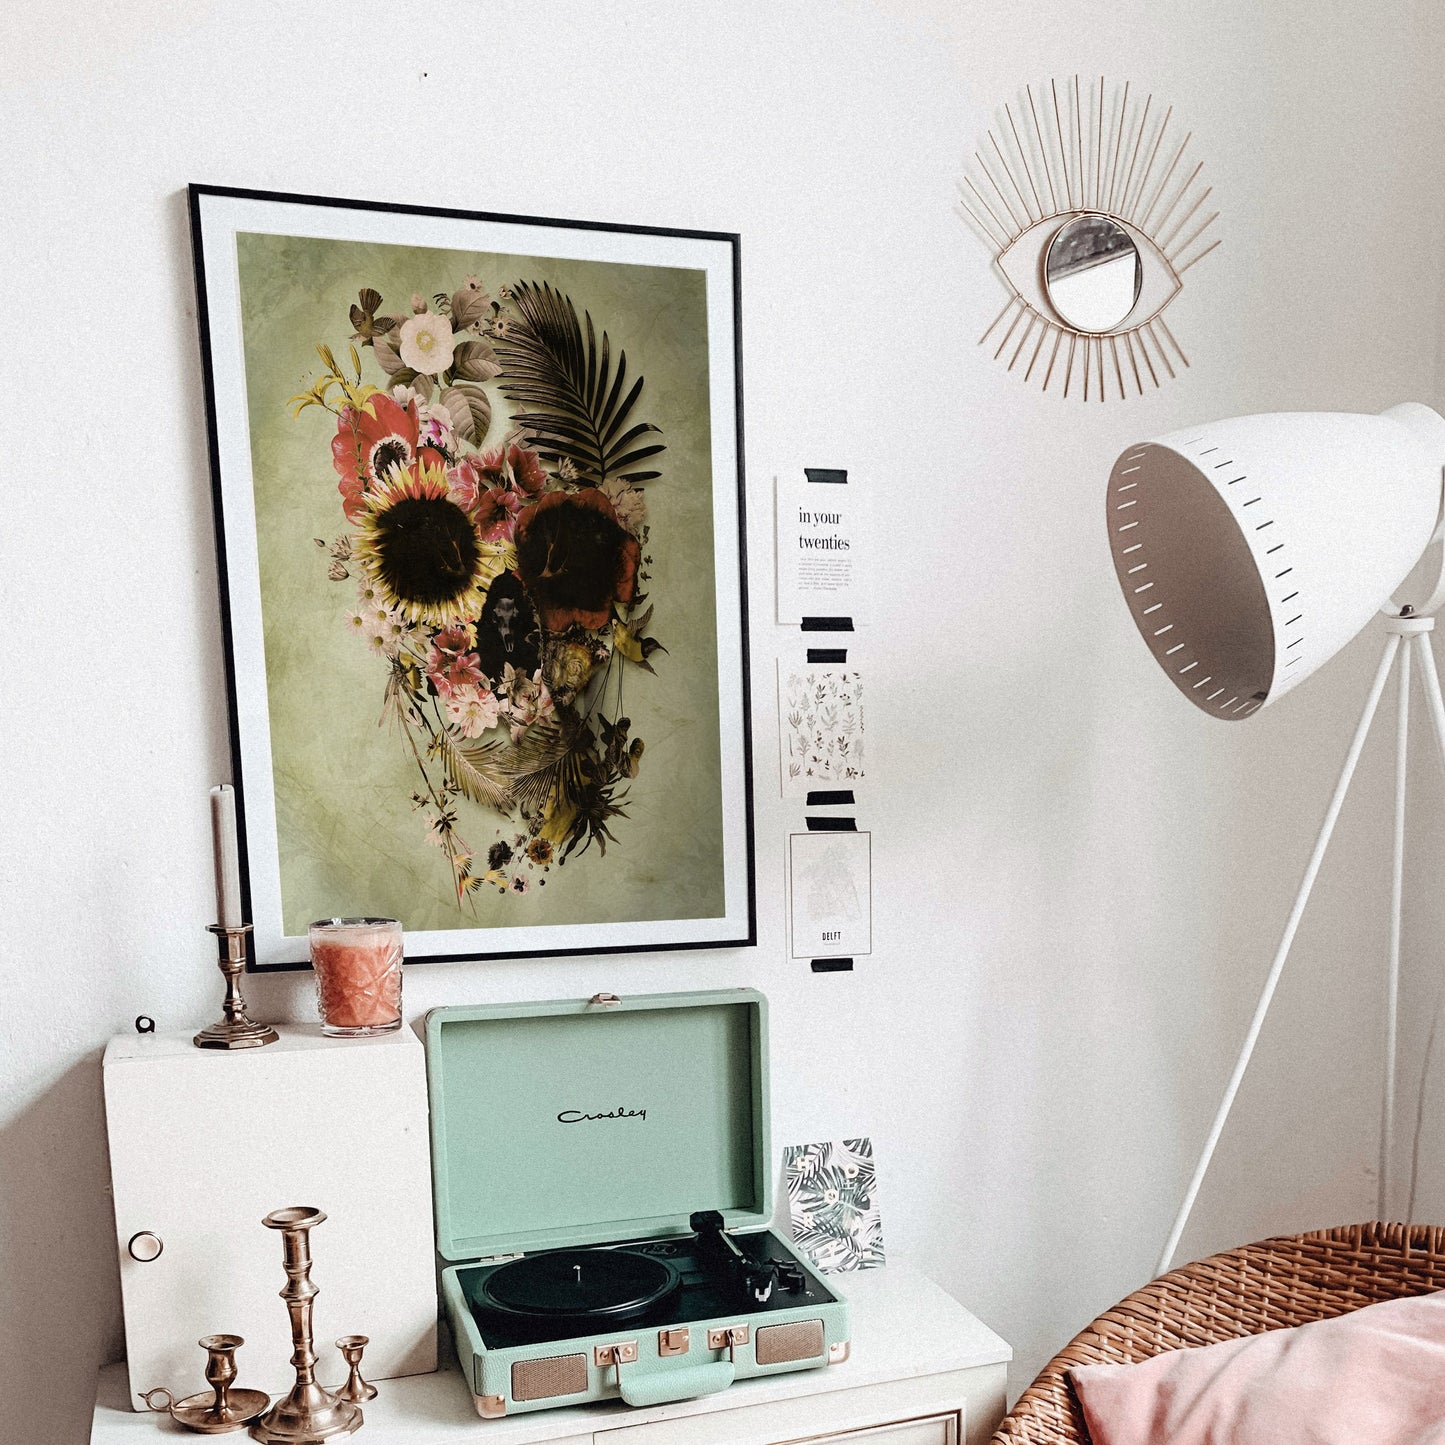 Flower Skull Art Print, Floral Skull Instant Download Printable Wall Art, Flower Skull Home Decor Gift, Downloadable Skull Poster Wall Decor